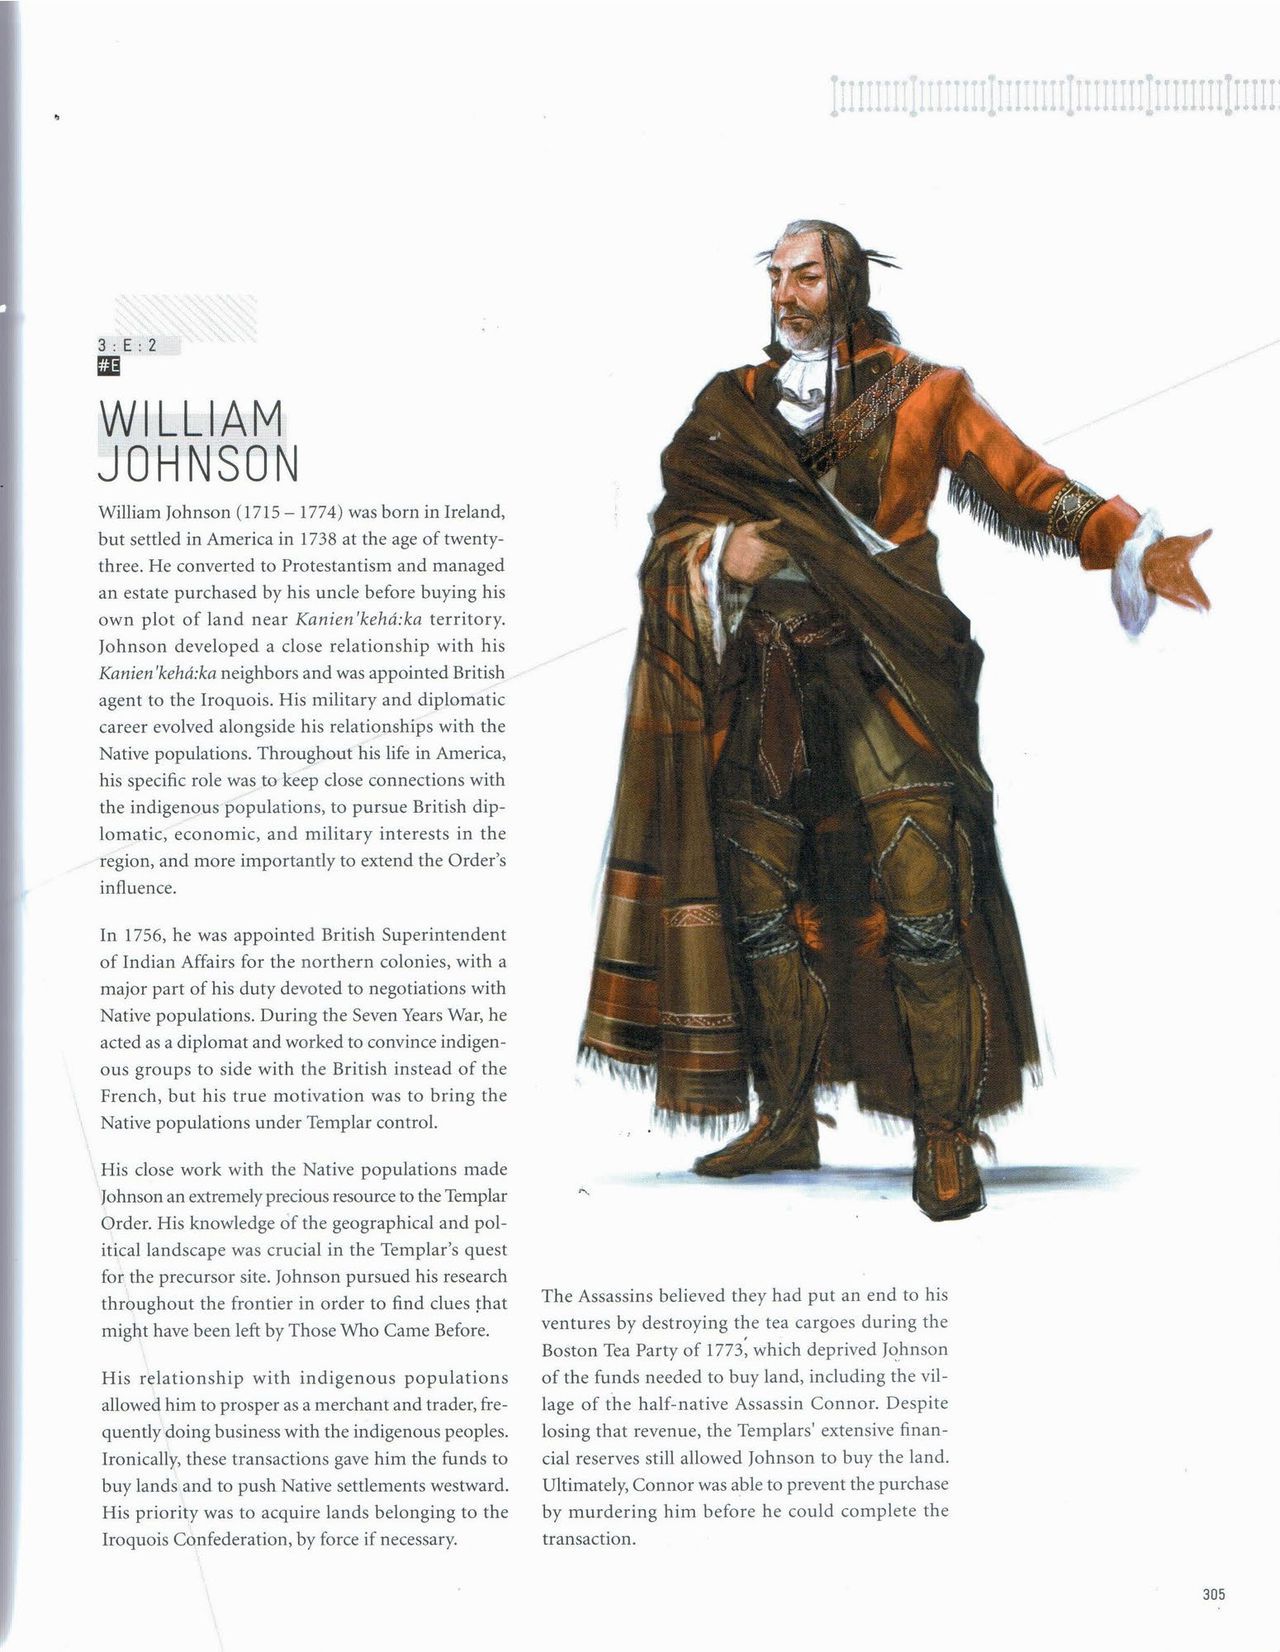 Assassin's Creed Encyclopedia 2.0 306